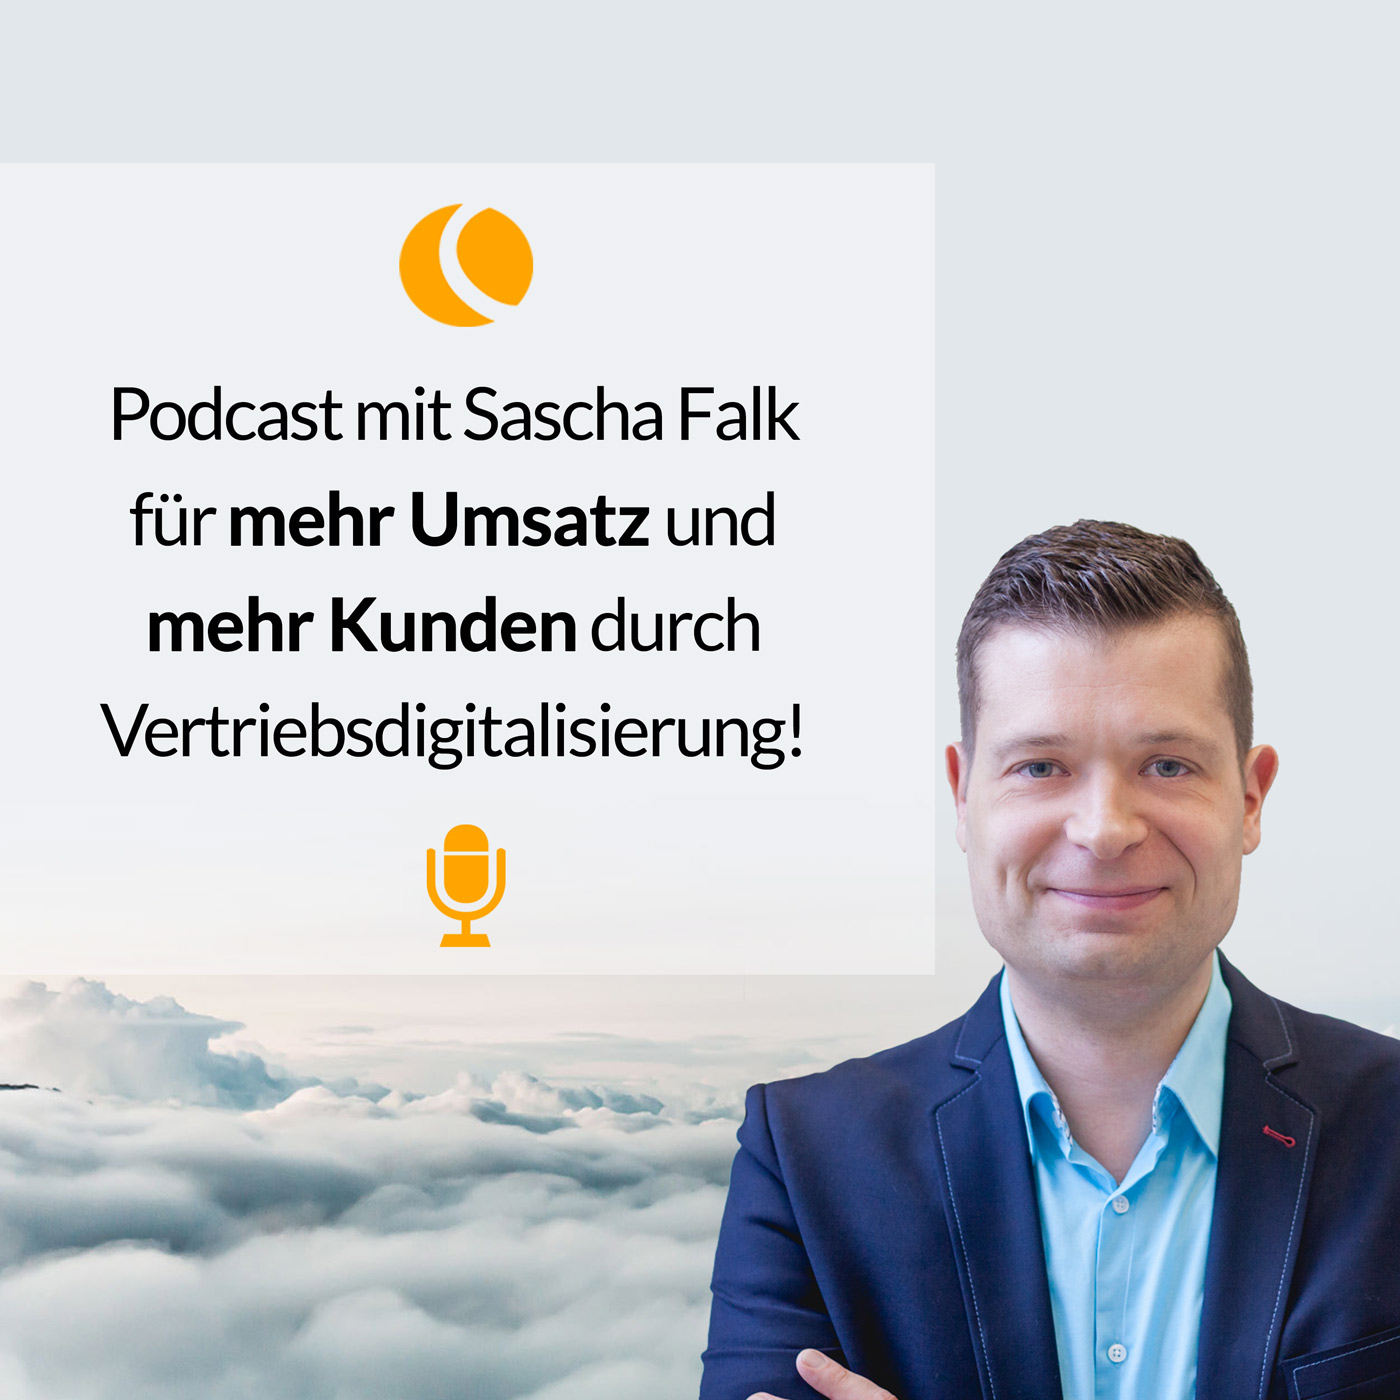 CENTEVO Podcast mit Sascha Falk für mehr Umsatz mit Vertriebsdigitalisierung und Marketingautomation